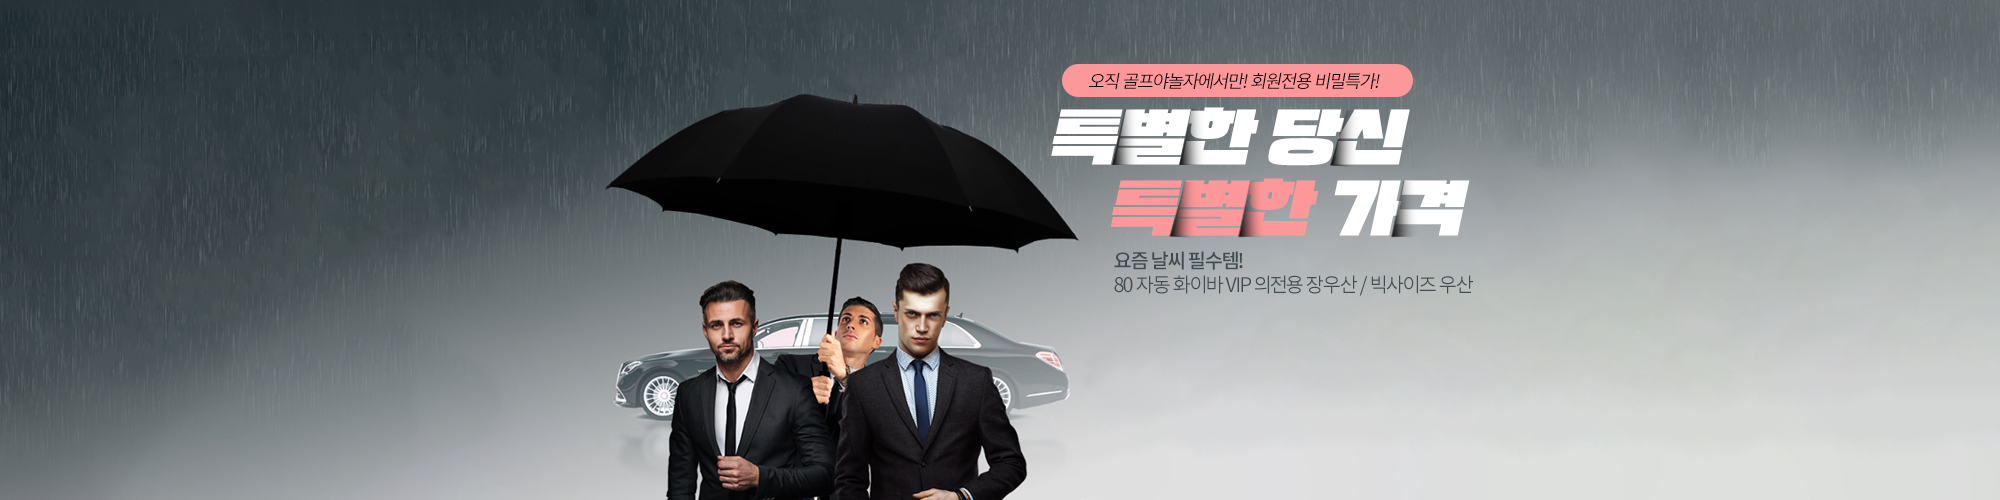 80 자동 화이바 VIP 의전용 장우산 / 빅사이즈 우산 / 라운드 우산